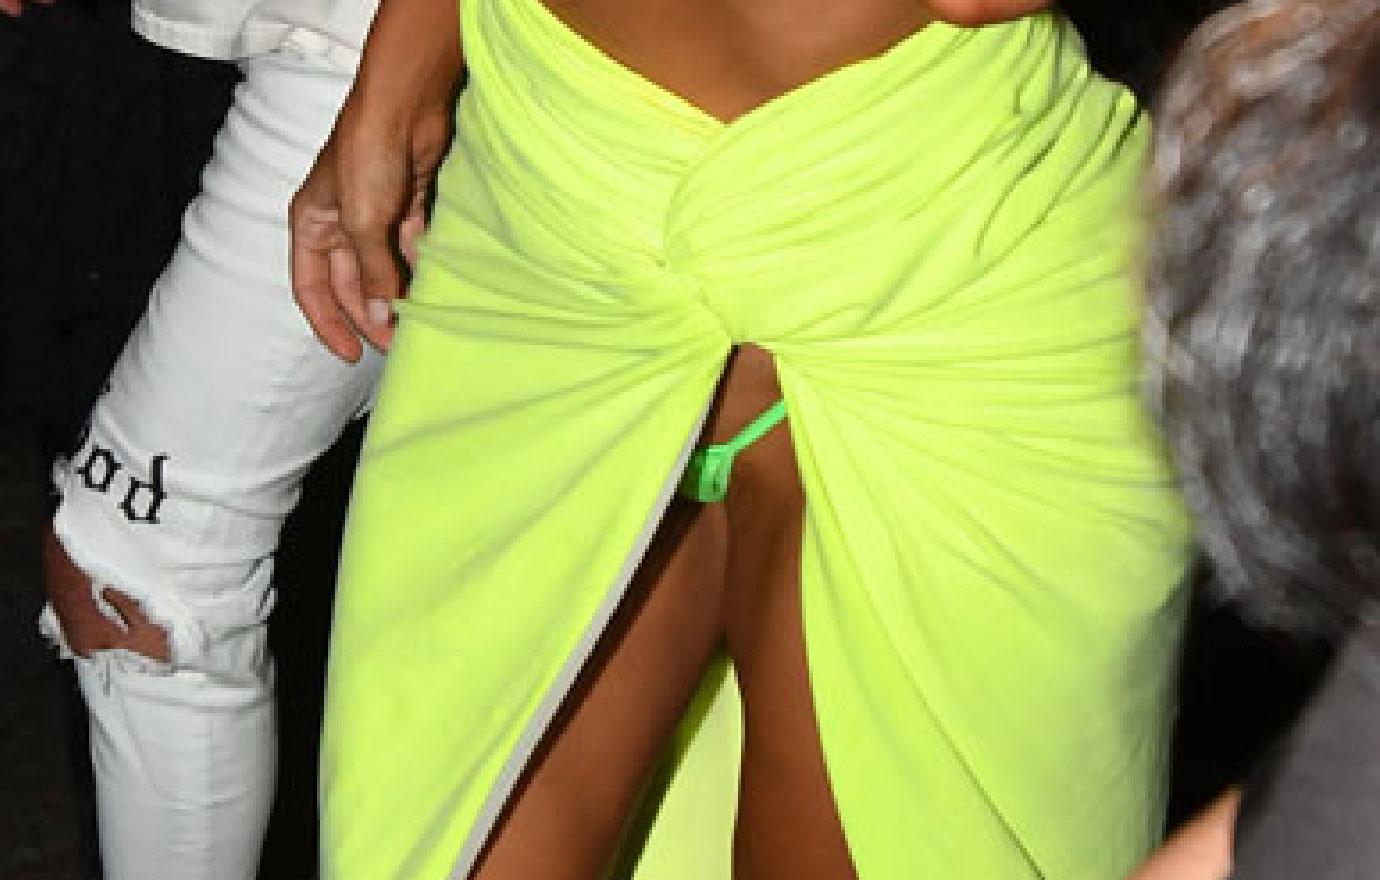 Kim Kardashian Flashes Neon Thong During Wardrobe Malfunction